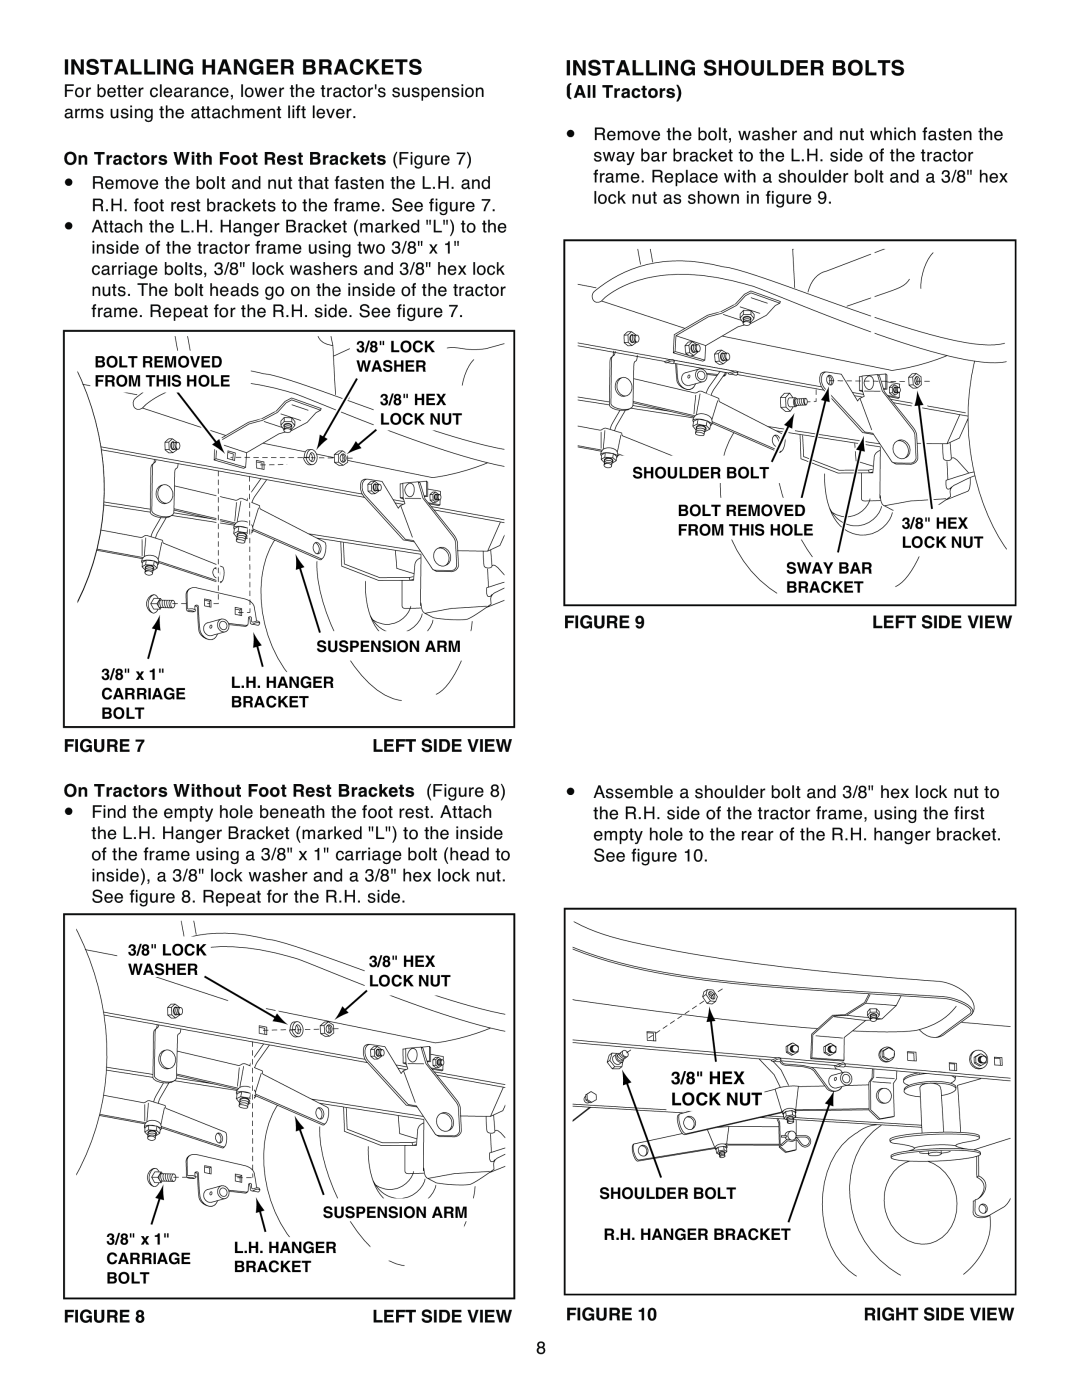 Sears 486.248392 owner manual Installing Hanger Brackets, Installing Shoulder Bolts 